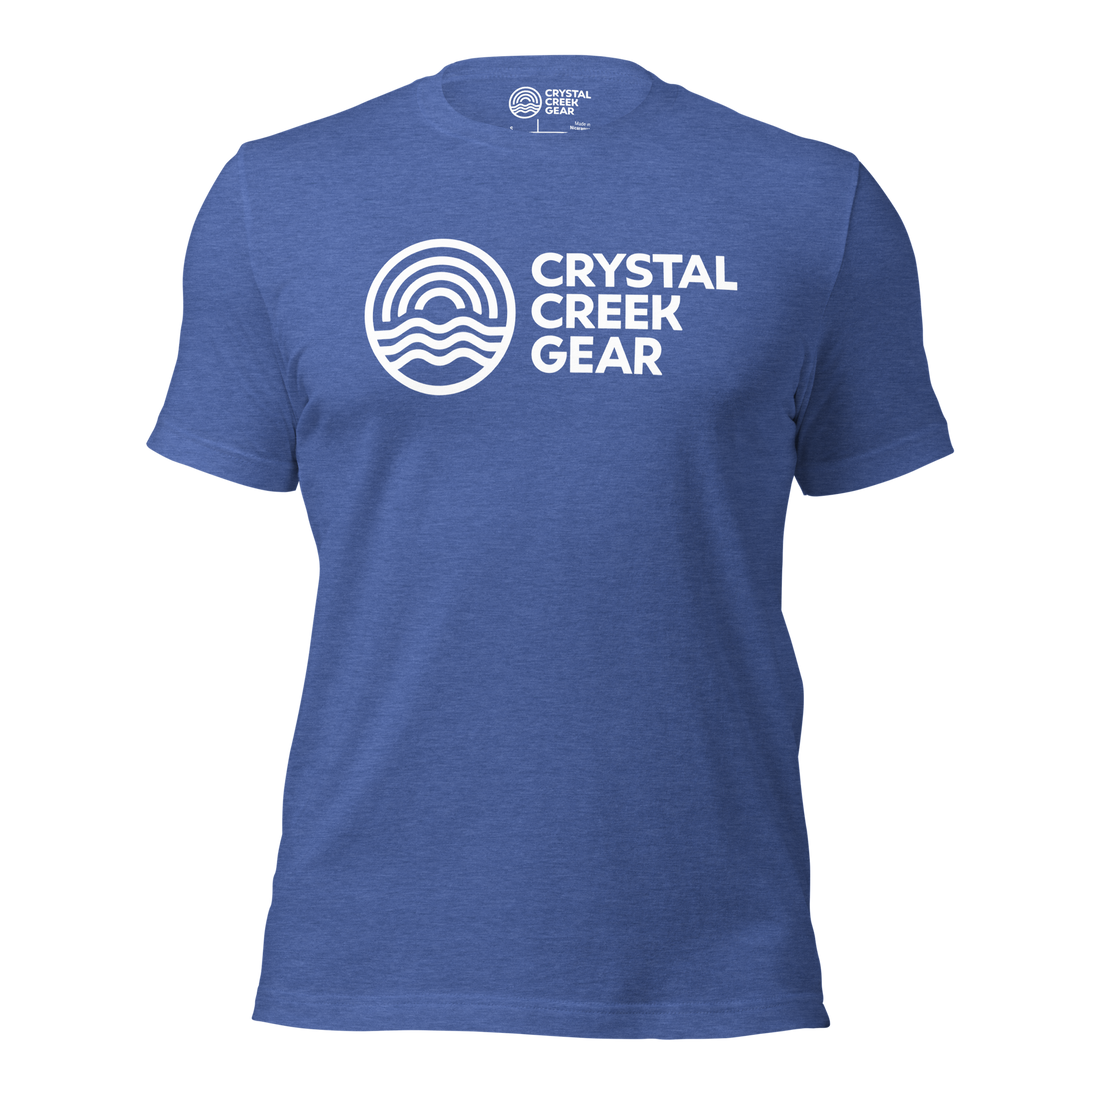 Crystal Creek Classic Tee - Crystal Creek Gear